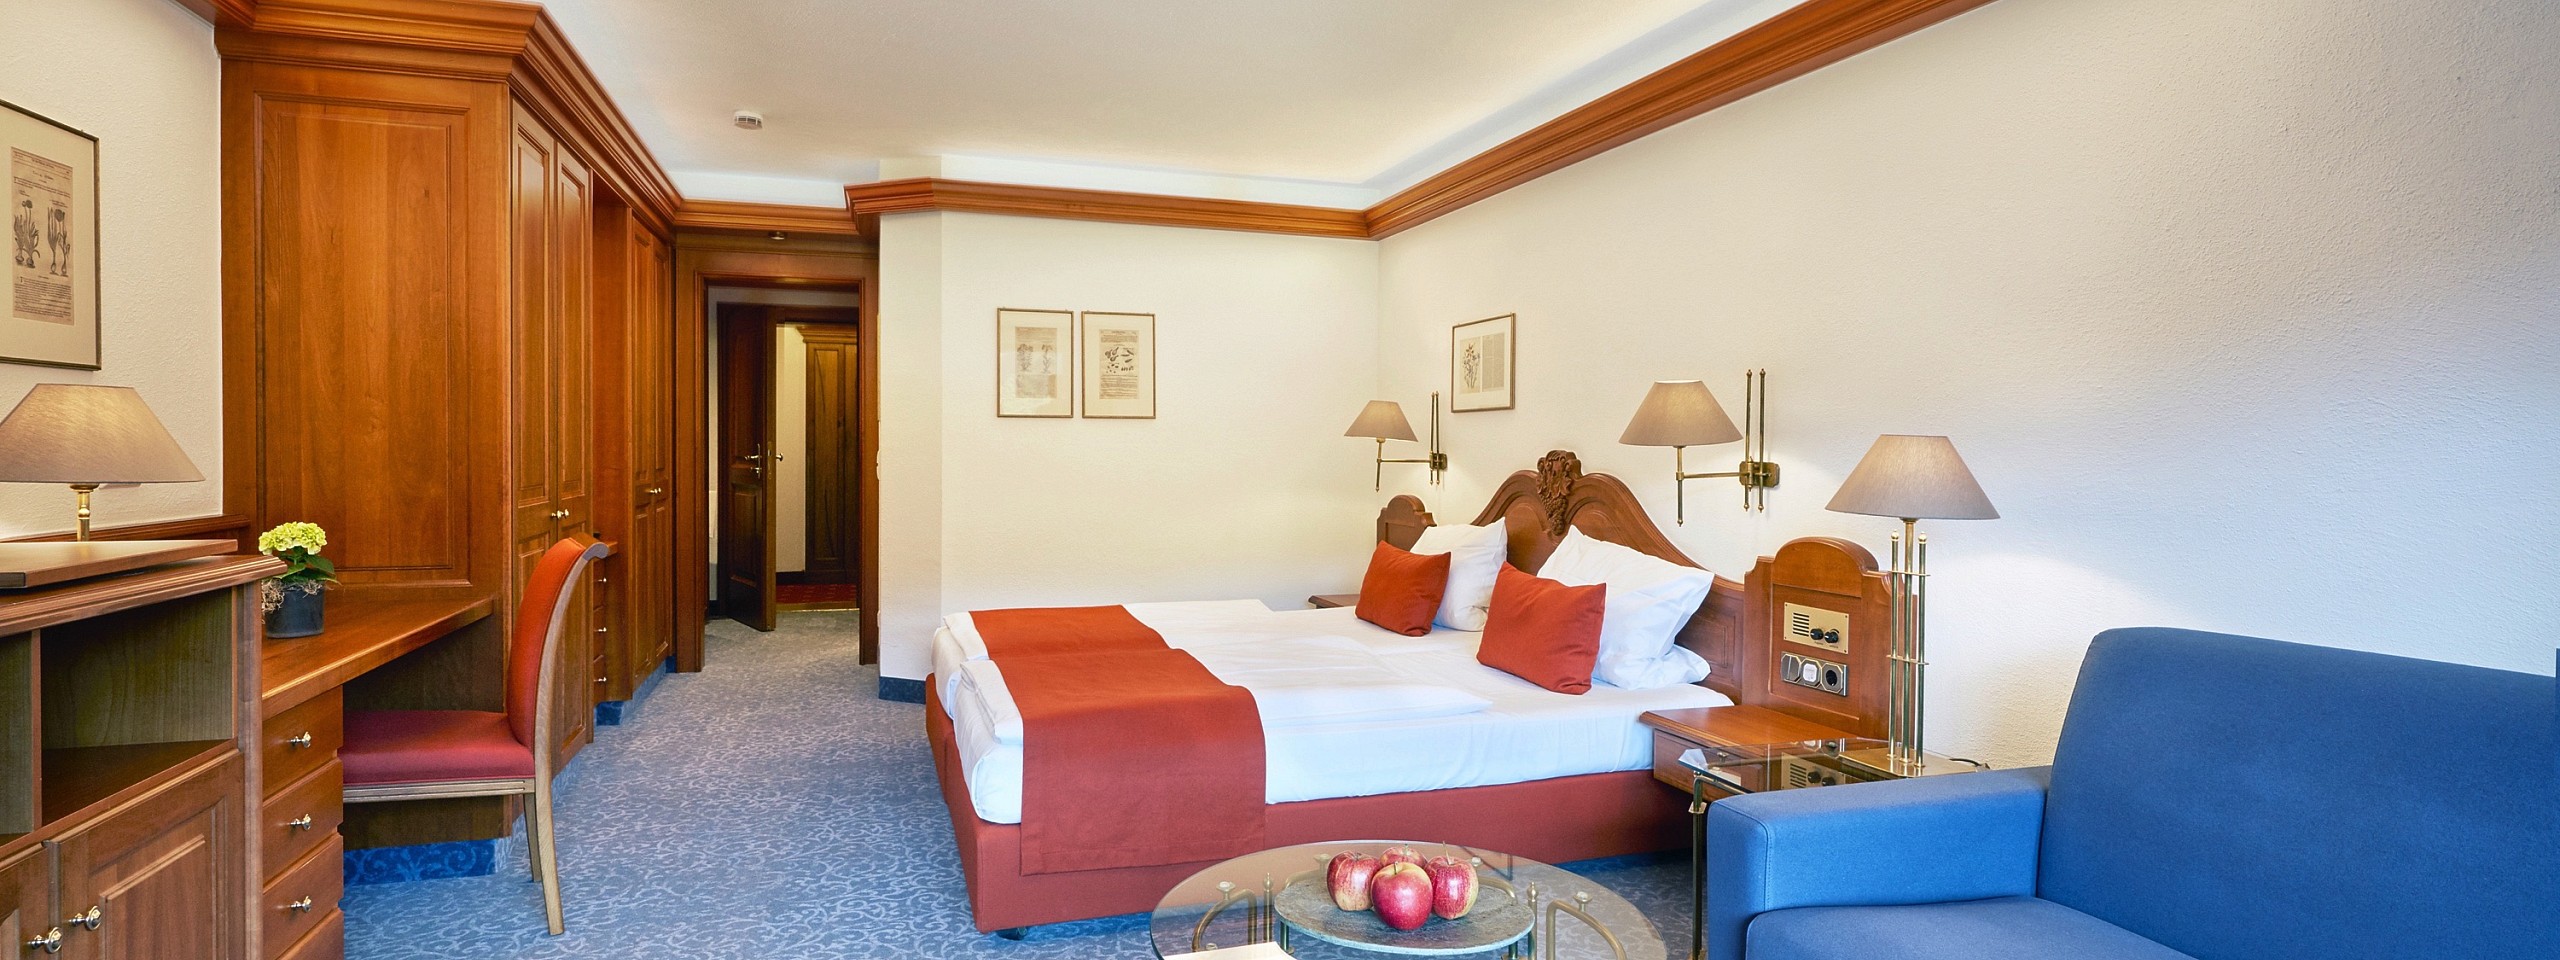 Einladend eingerichtetes Hotelzimmer im Schwarzwald mit blauen und roten Akzenten.